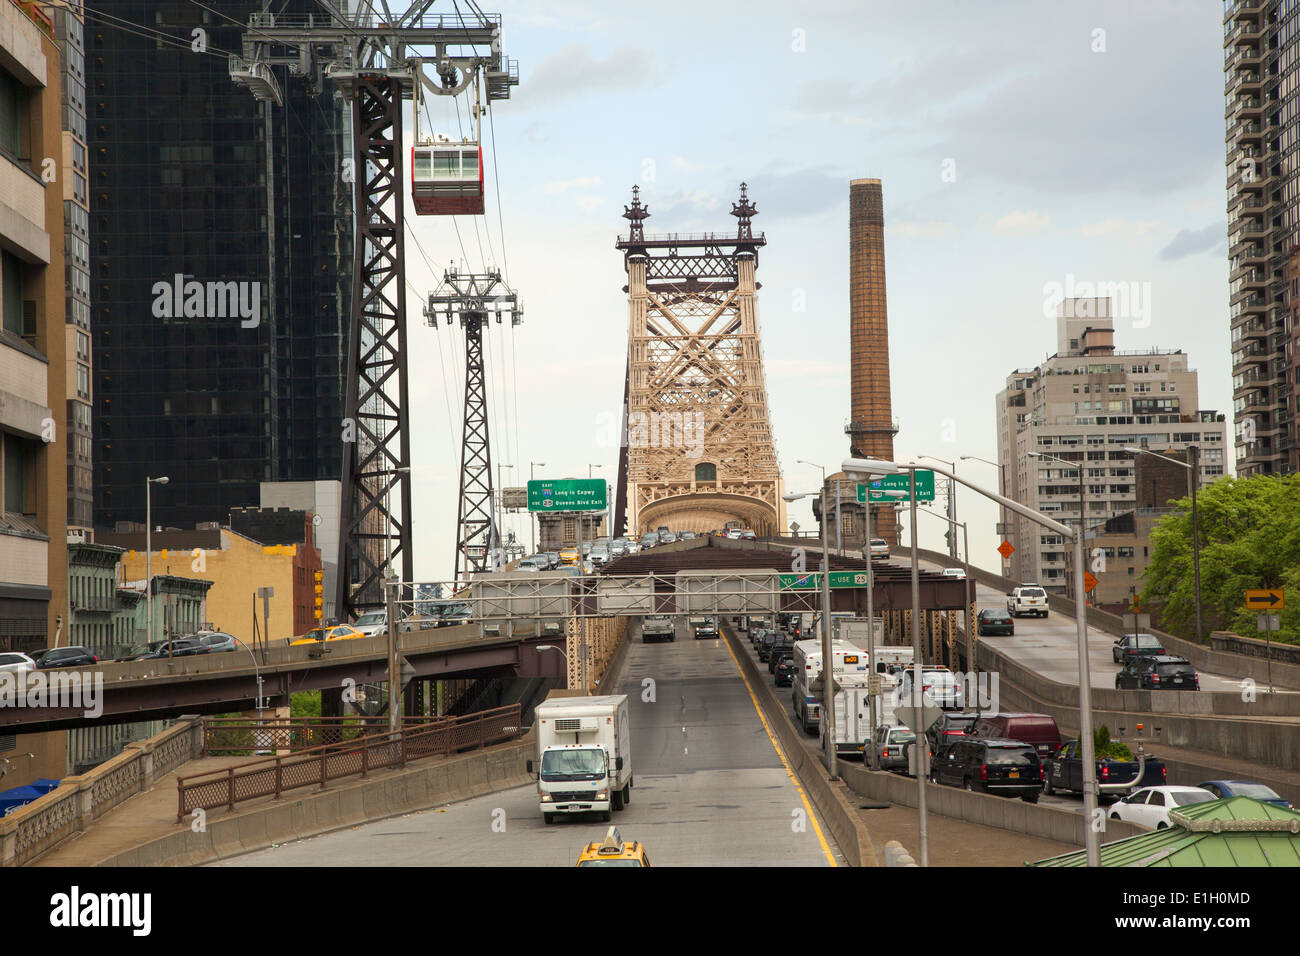 Route vers et à partir de la 59e st pont reliant Manhattan et Queens avec le Roosevelt Island Tramway sur la gauche. Banque D'Images